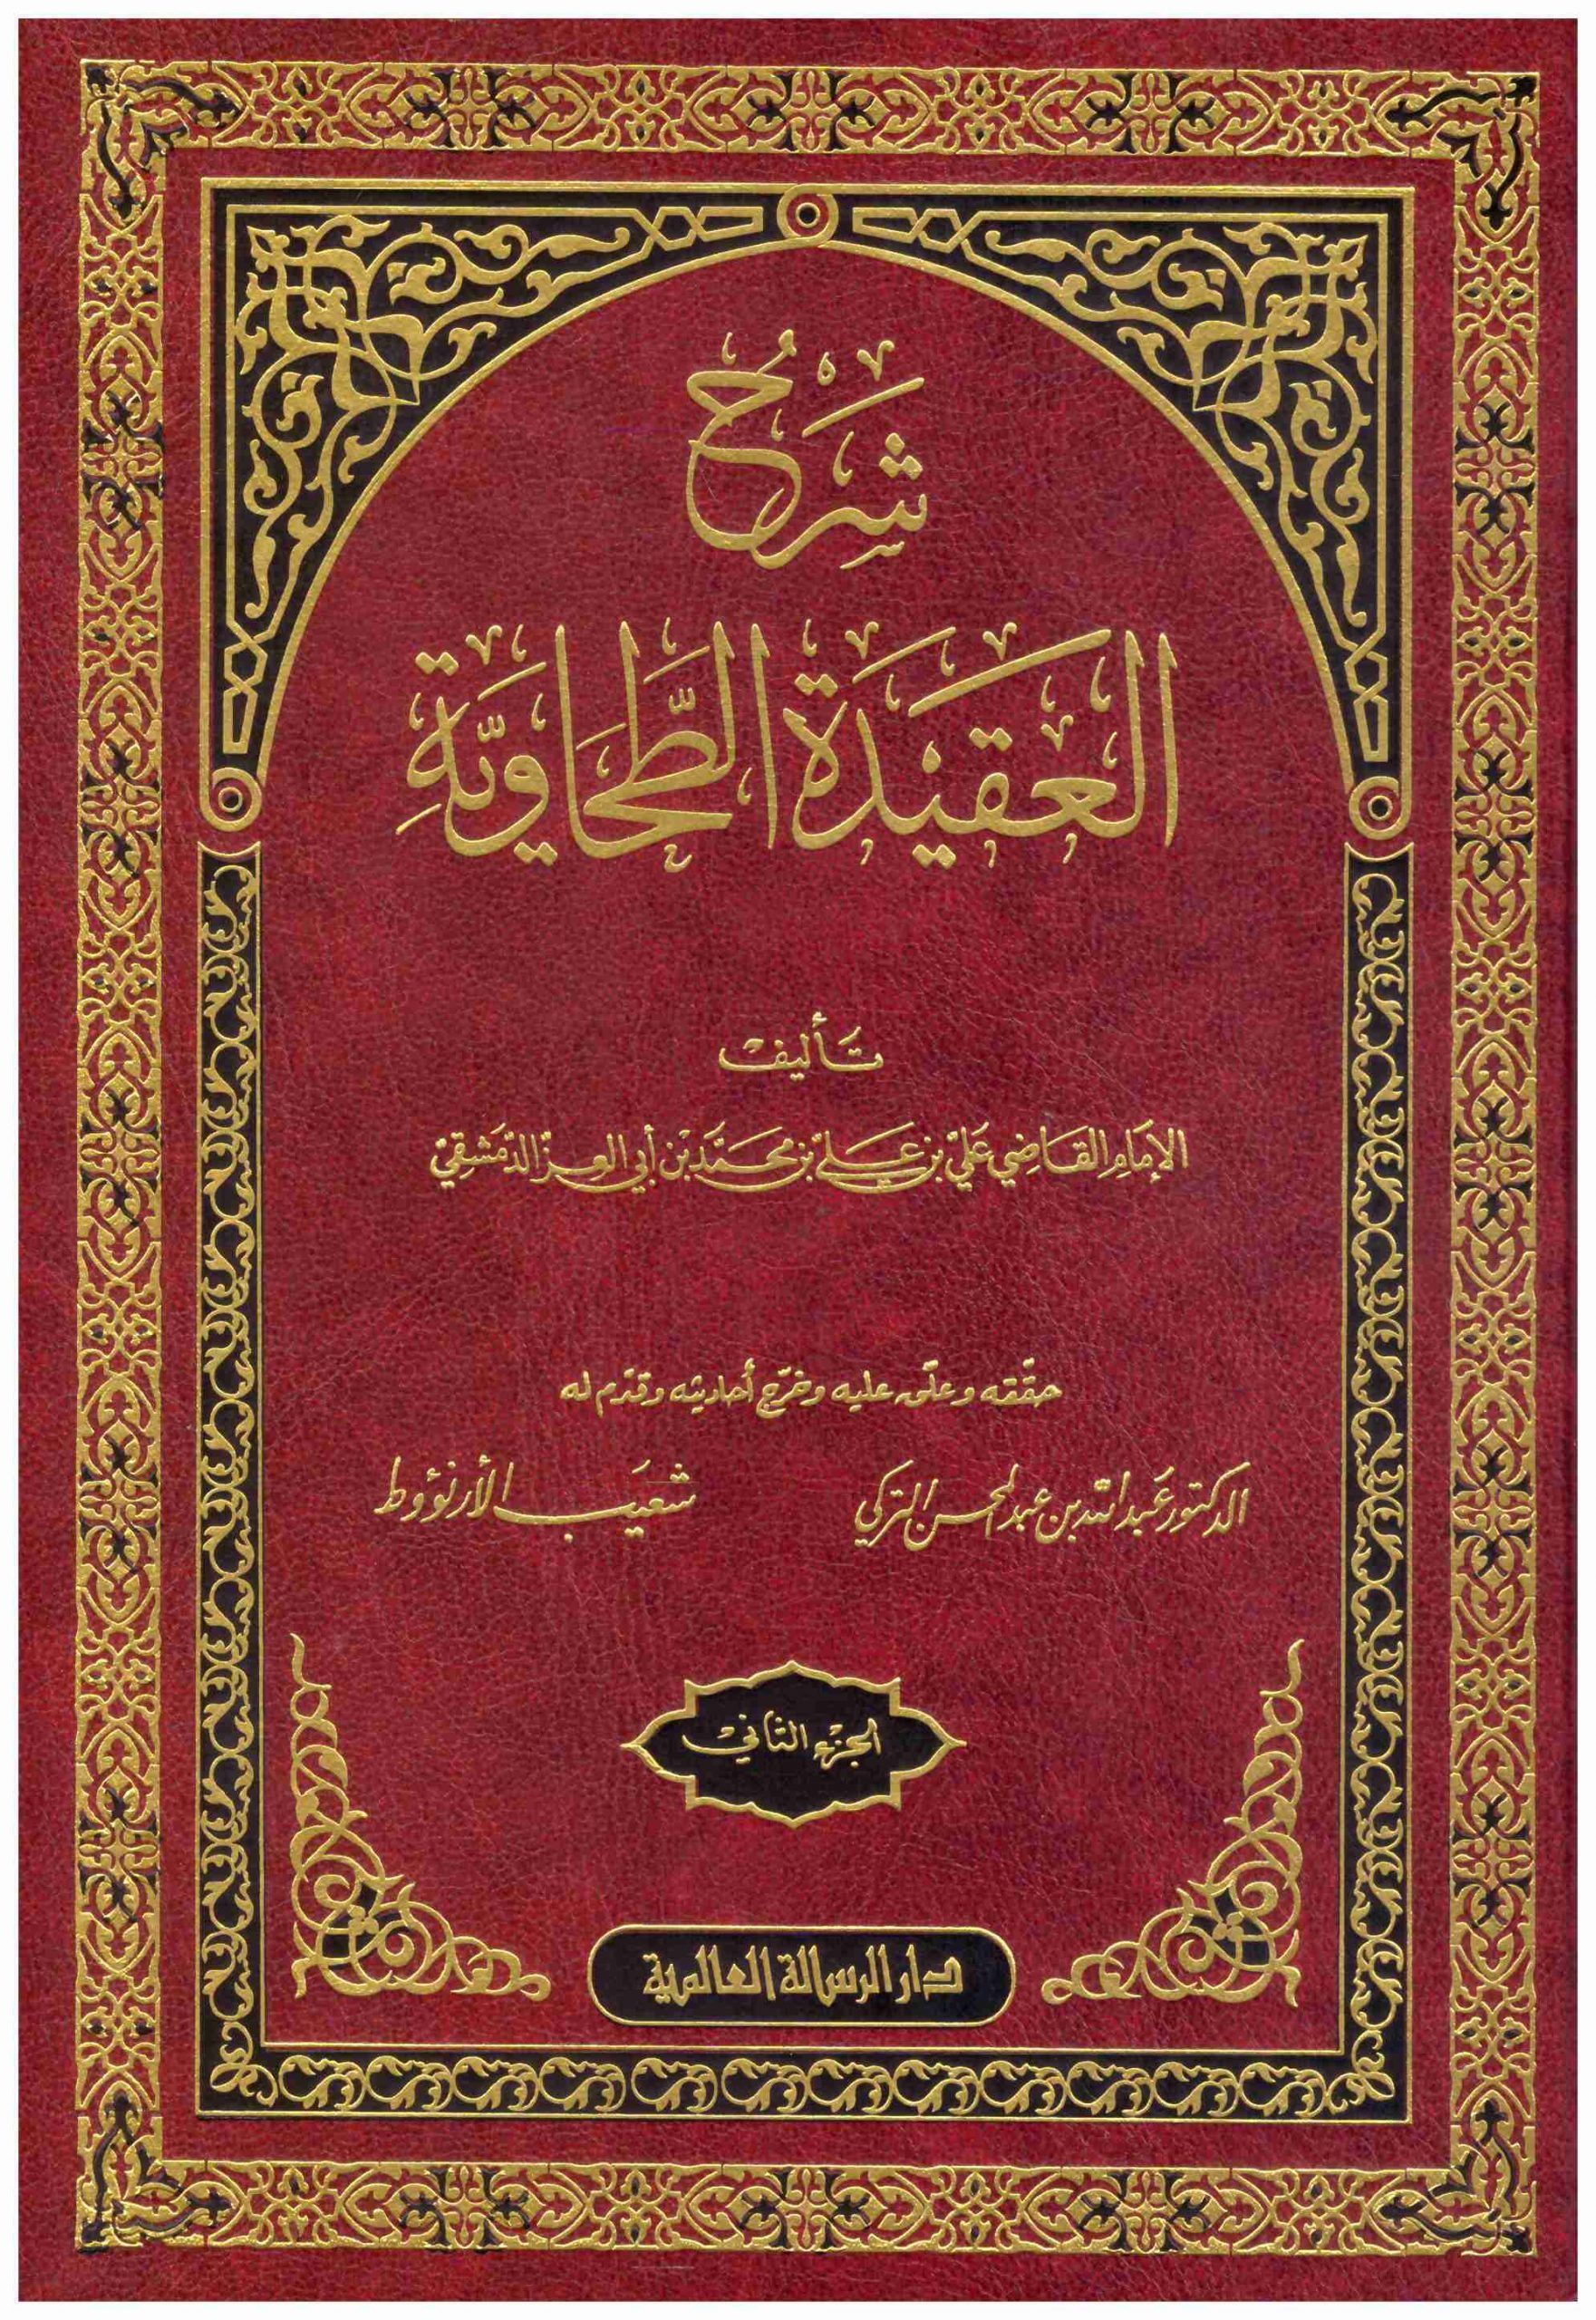 Kitab al-Aqiidah al-Thohaawiyah, salah satu kitab penting yang memuat pokok-pokok akidah ahlusunah waljmaah.